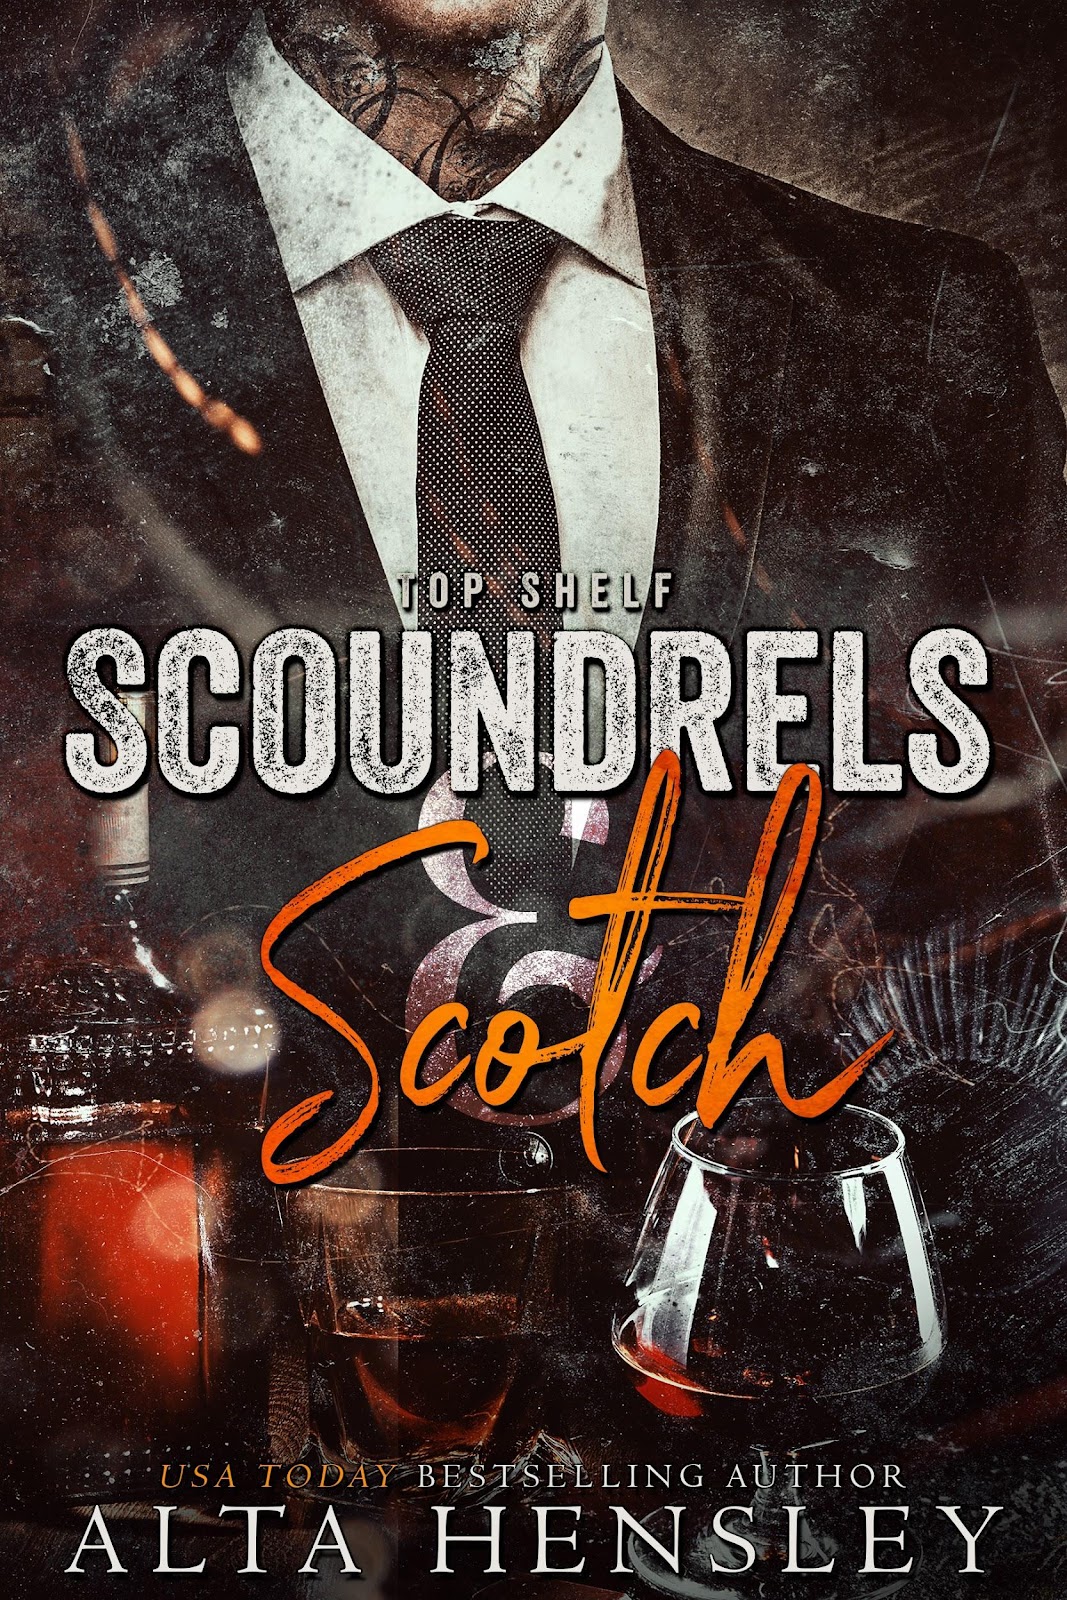 Scoundrels-Scotch-customdesign-JayAeer2017-eBook-complete.jpg